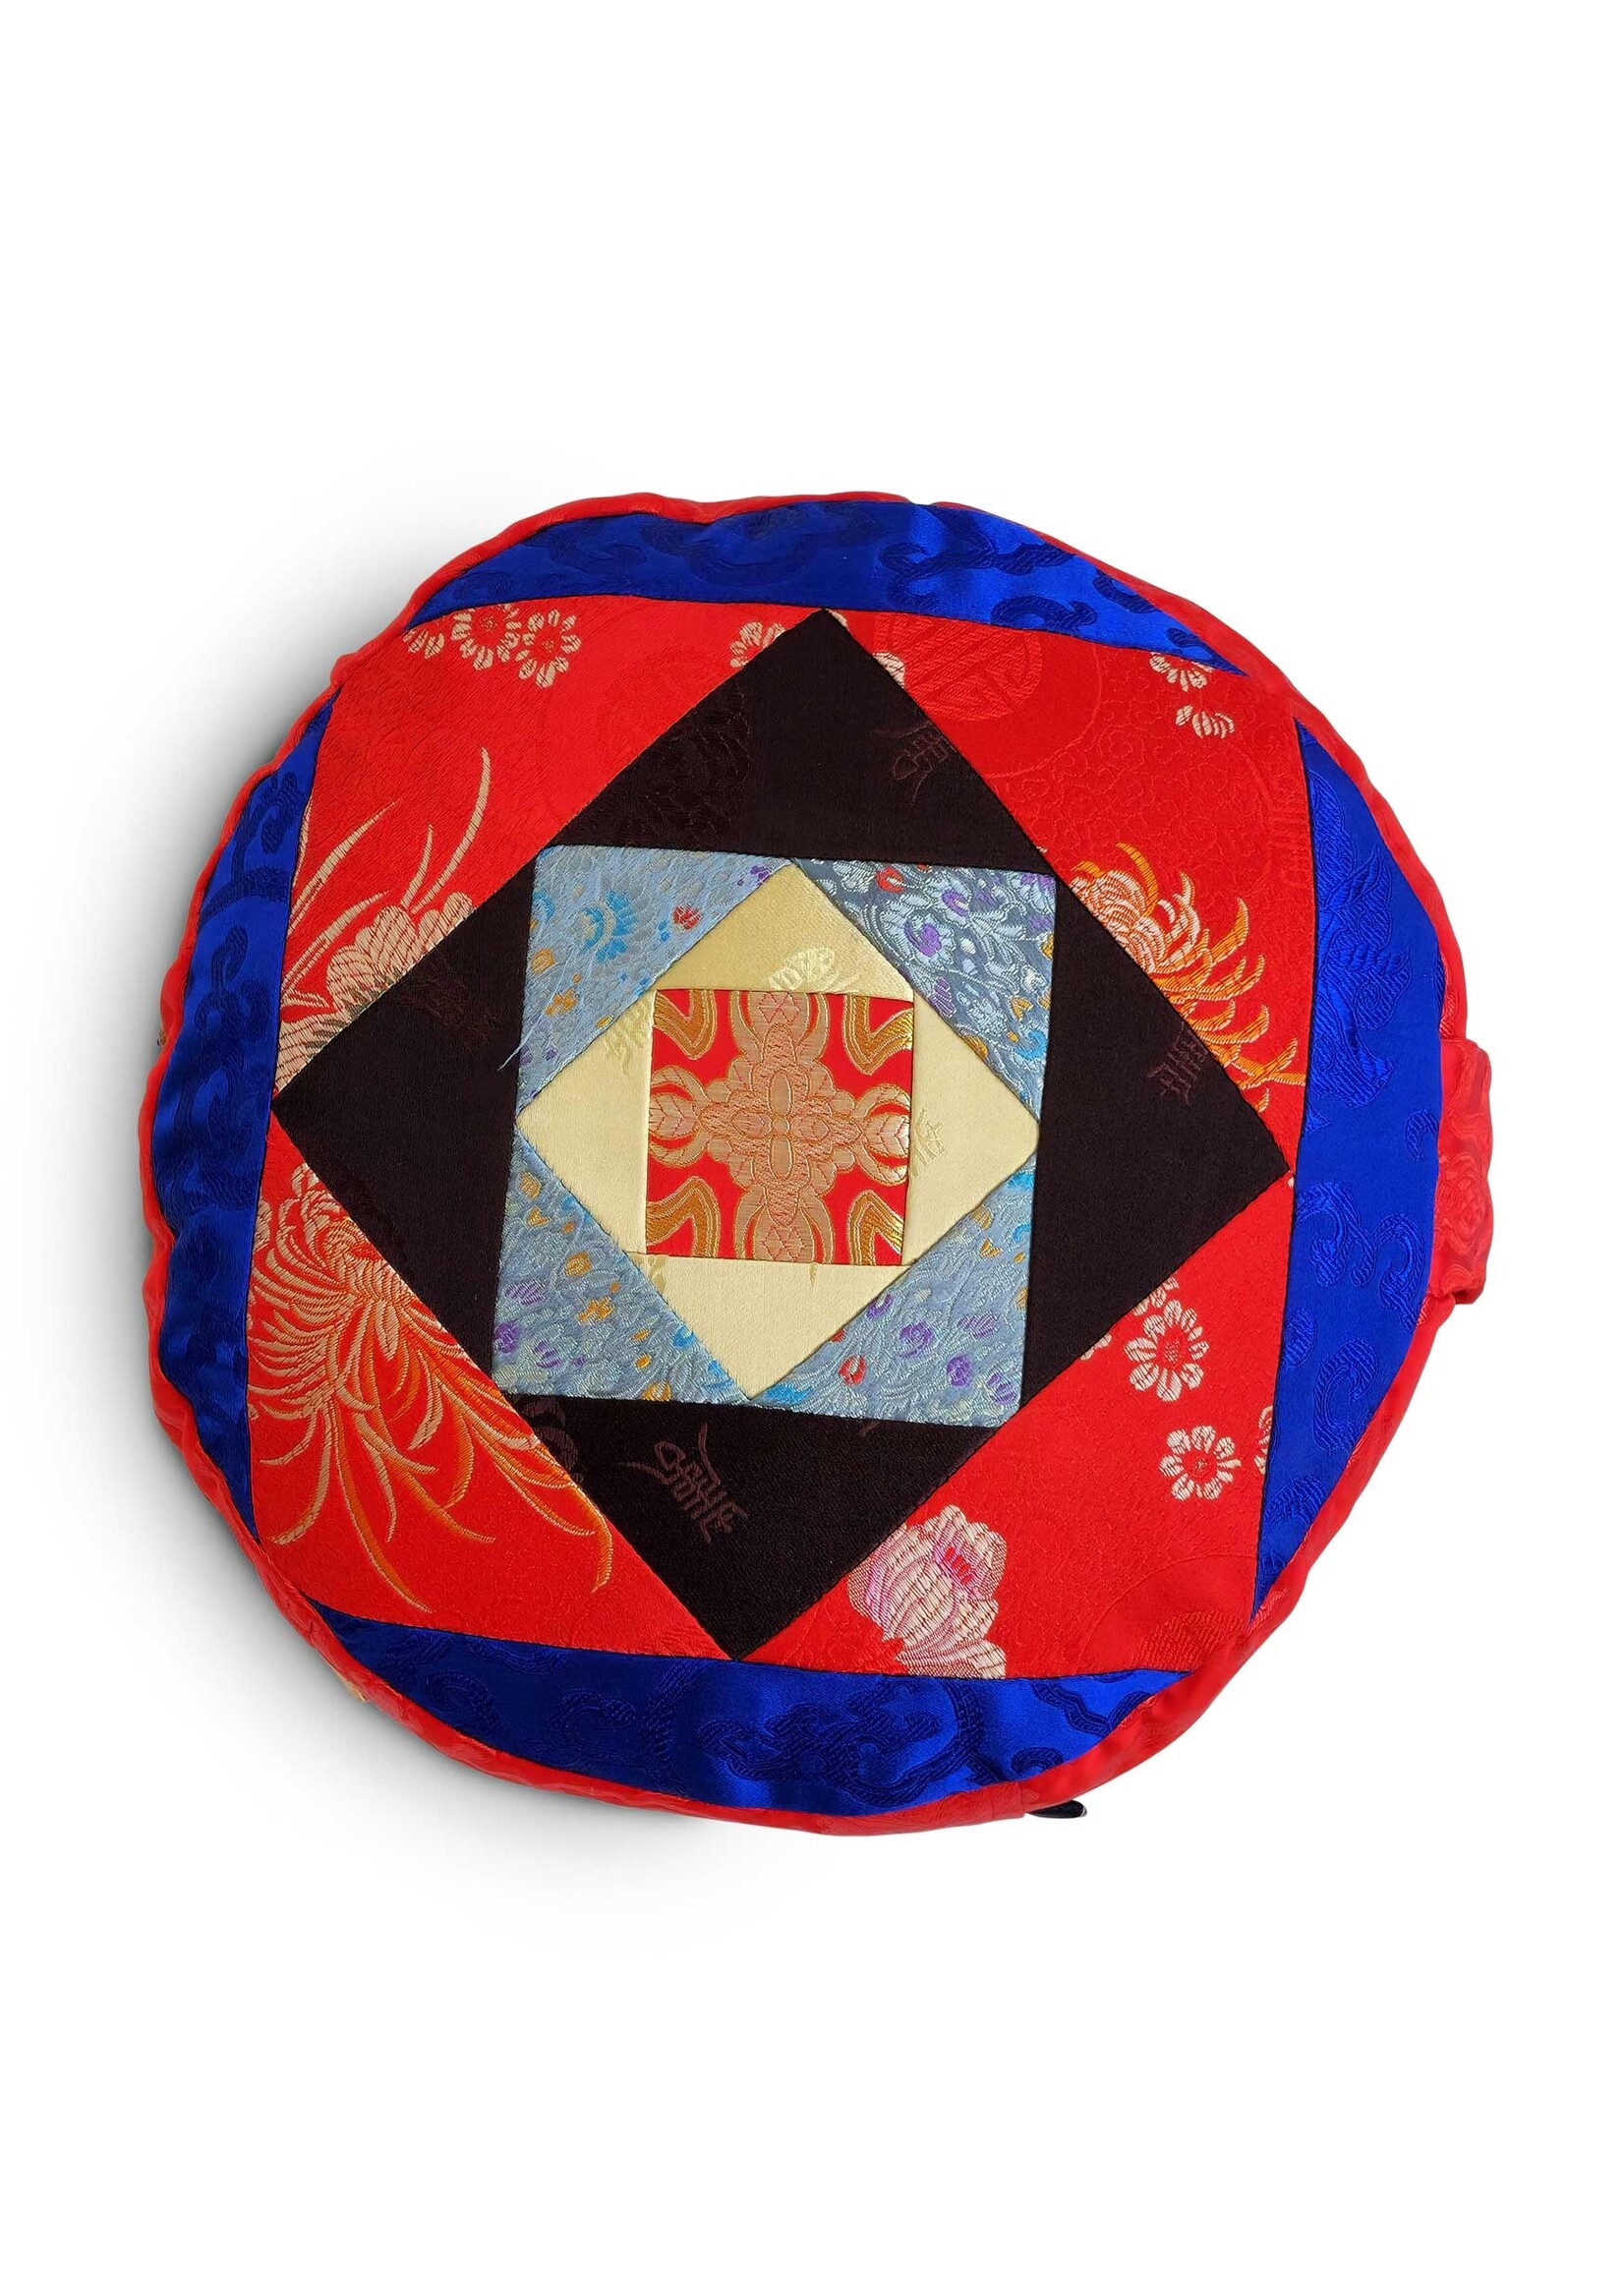 Tibetisches Zafu Meditationskissen aus Seidenbrokat mit Kapokfüllung, rot